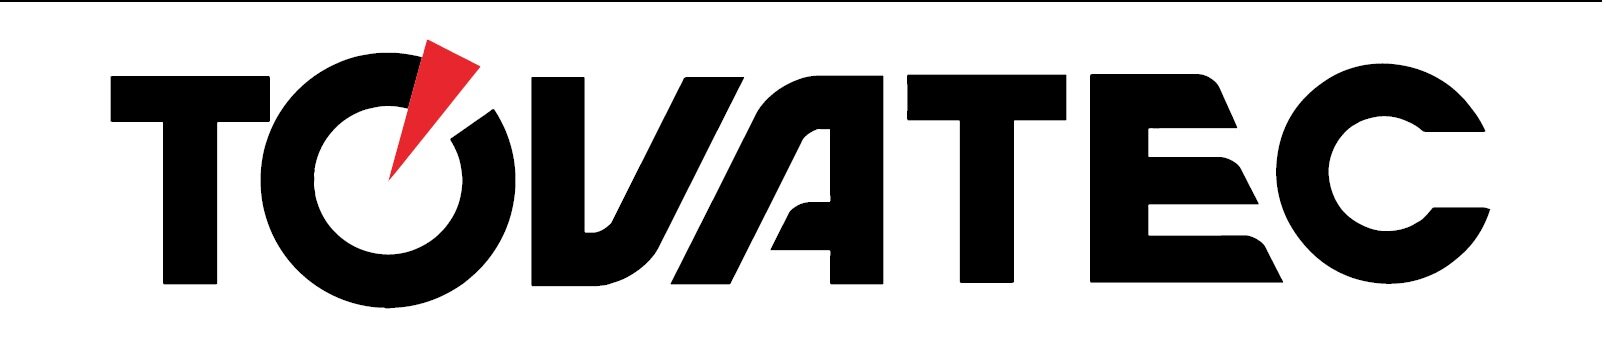 Tovatec Logo.jpg